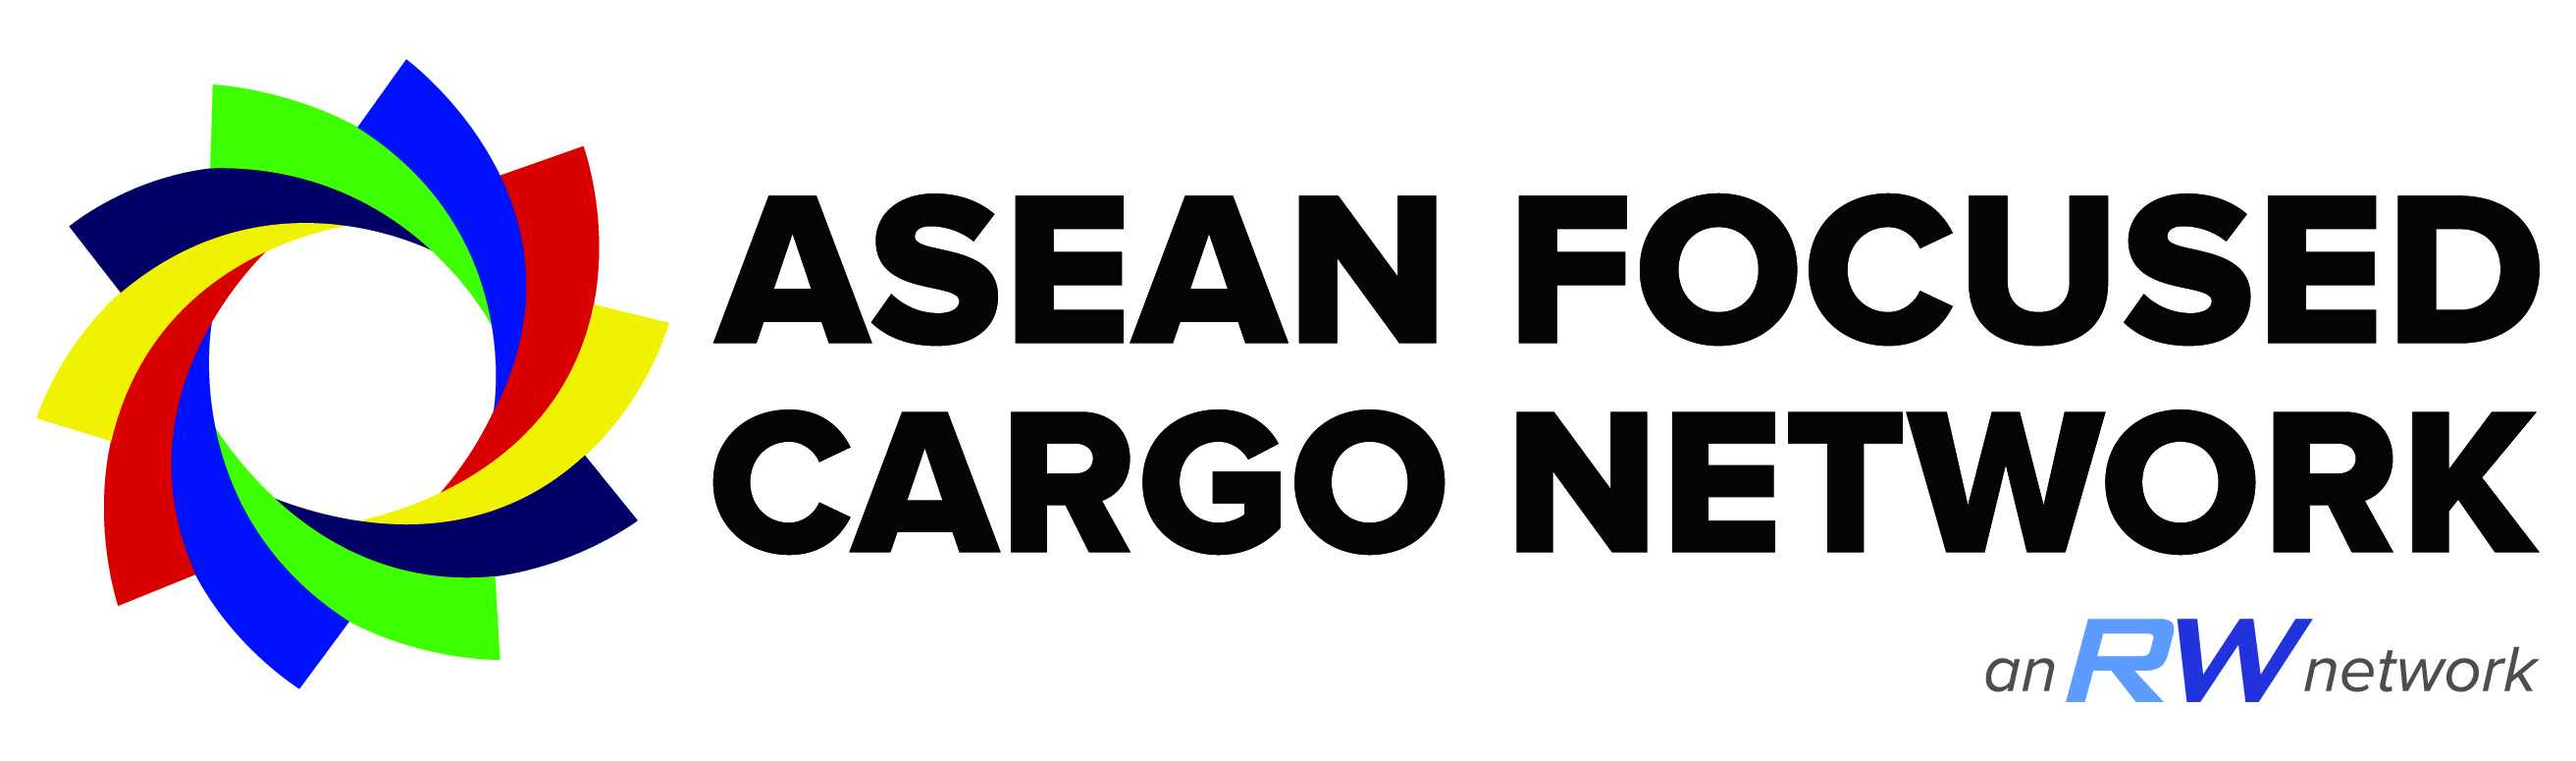 ASEAN Focused Cargo Network